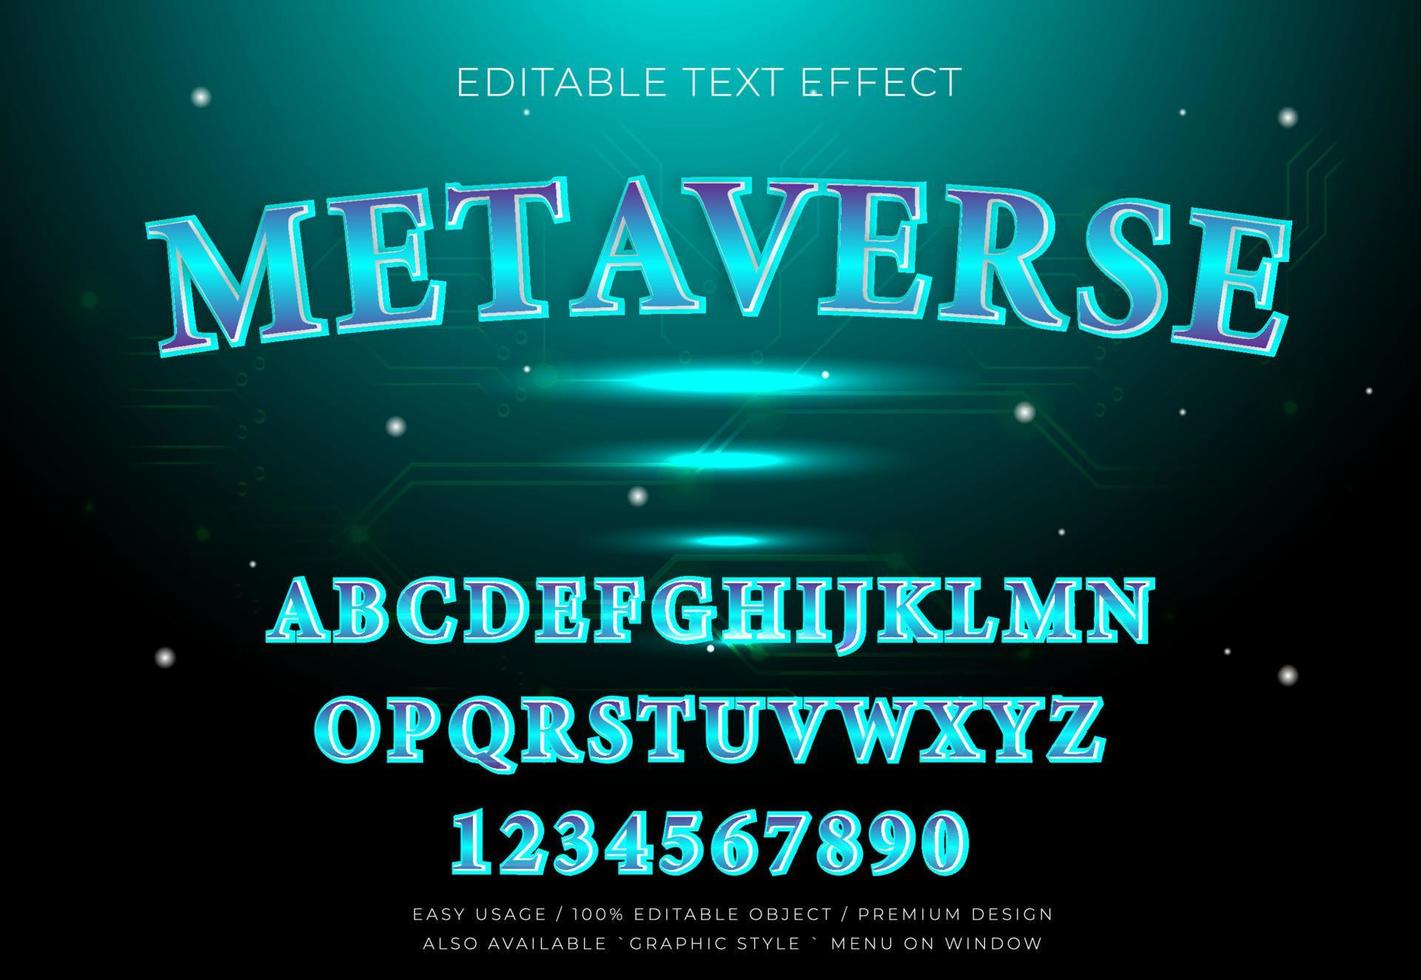 metavers teksteffect met grafische stijl vector